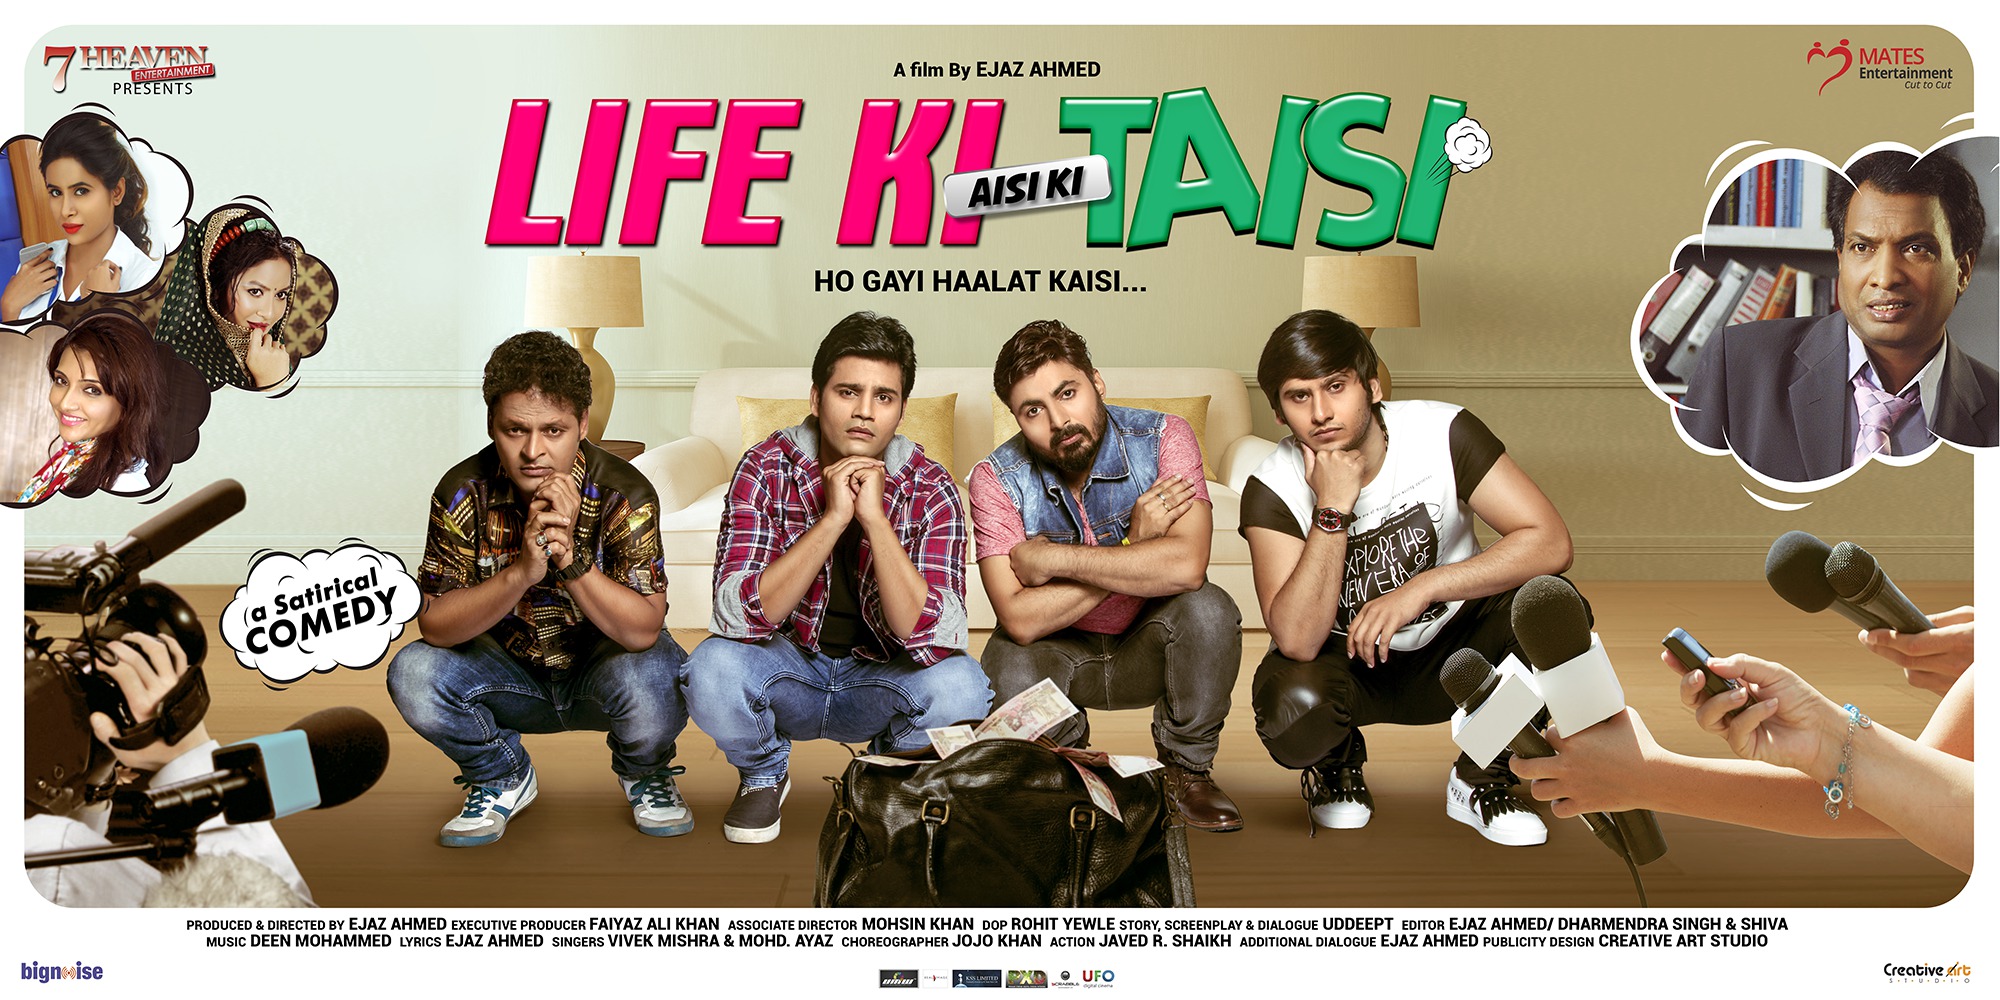 Mega Sized Movie Poster Image for Life Ki Aisi Ki Taisi (#5 of 6)